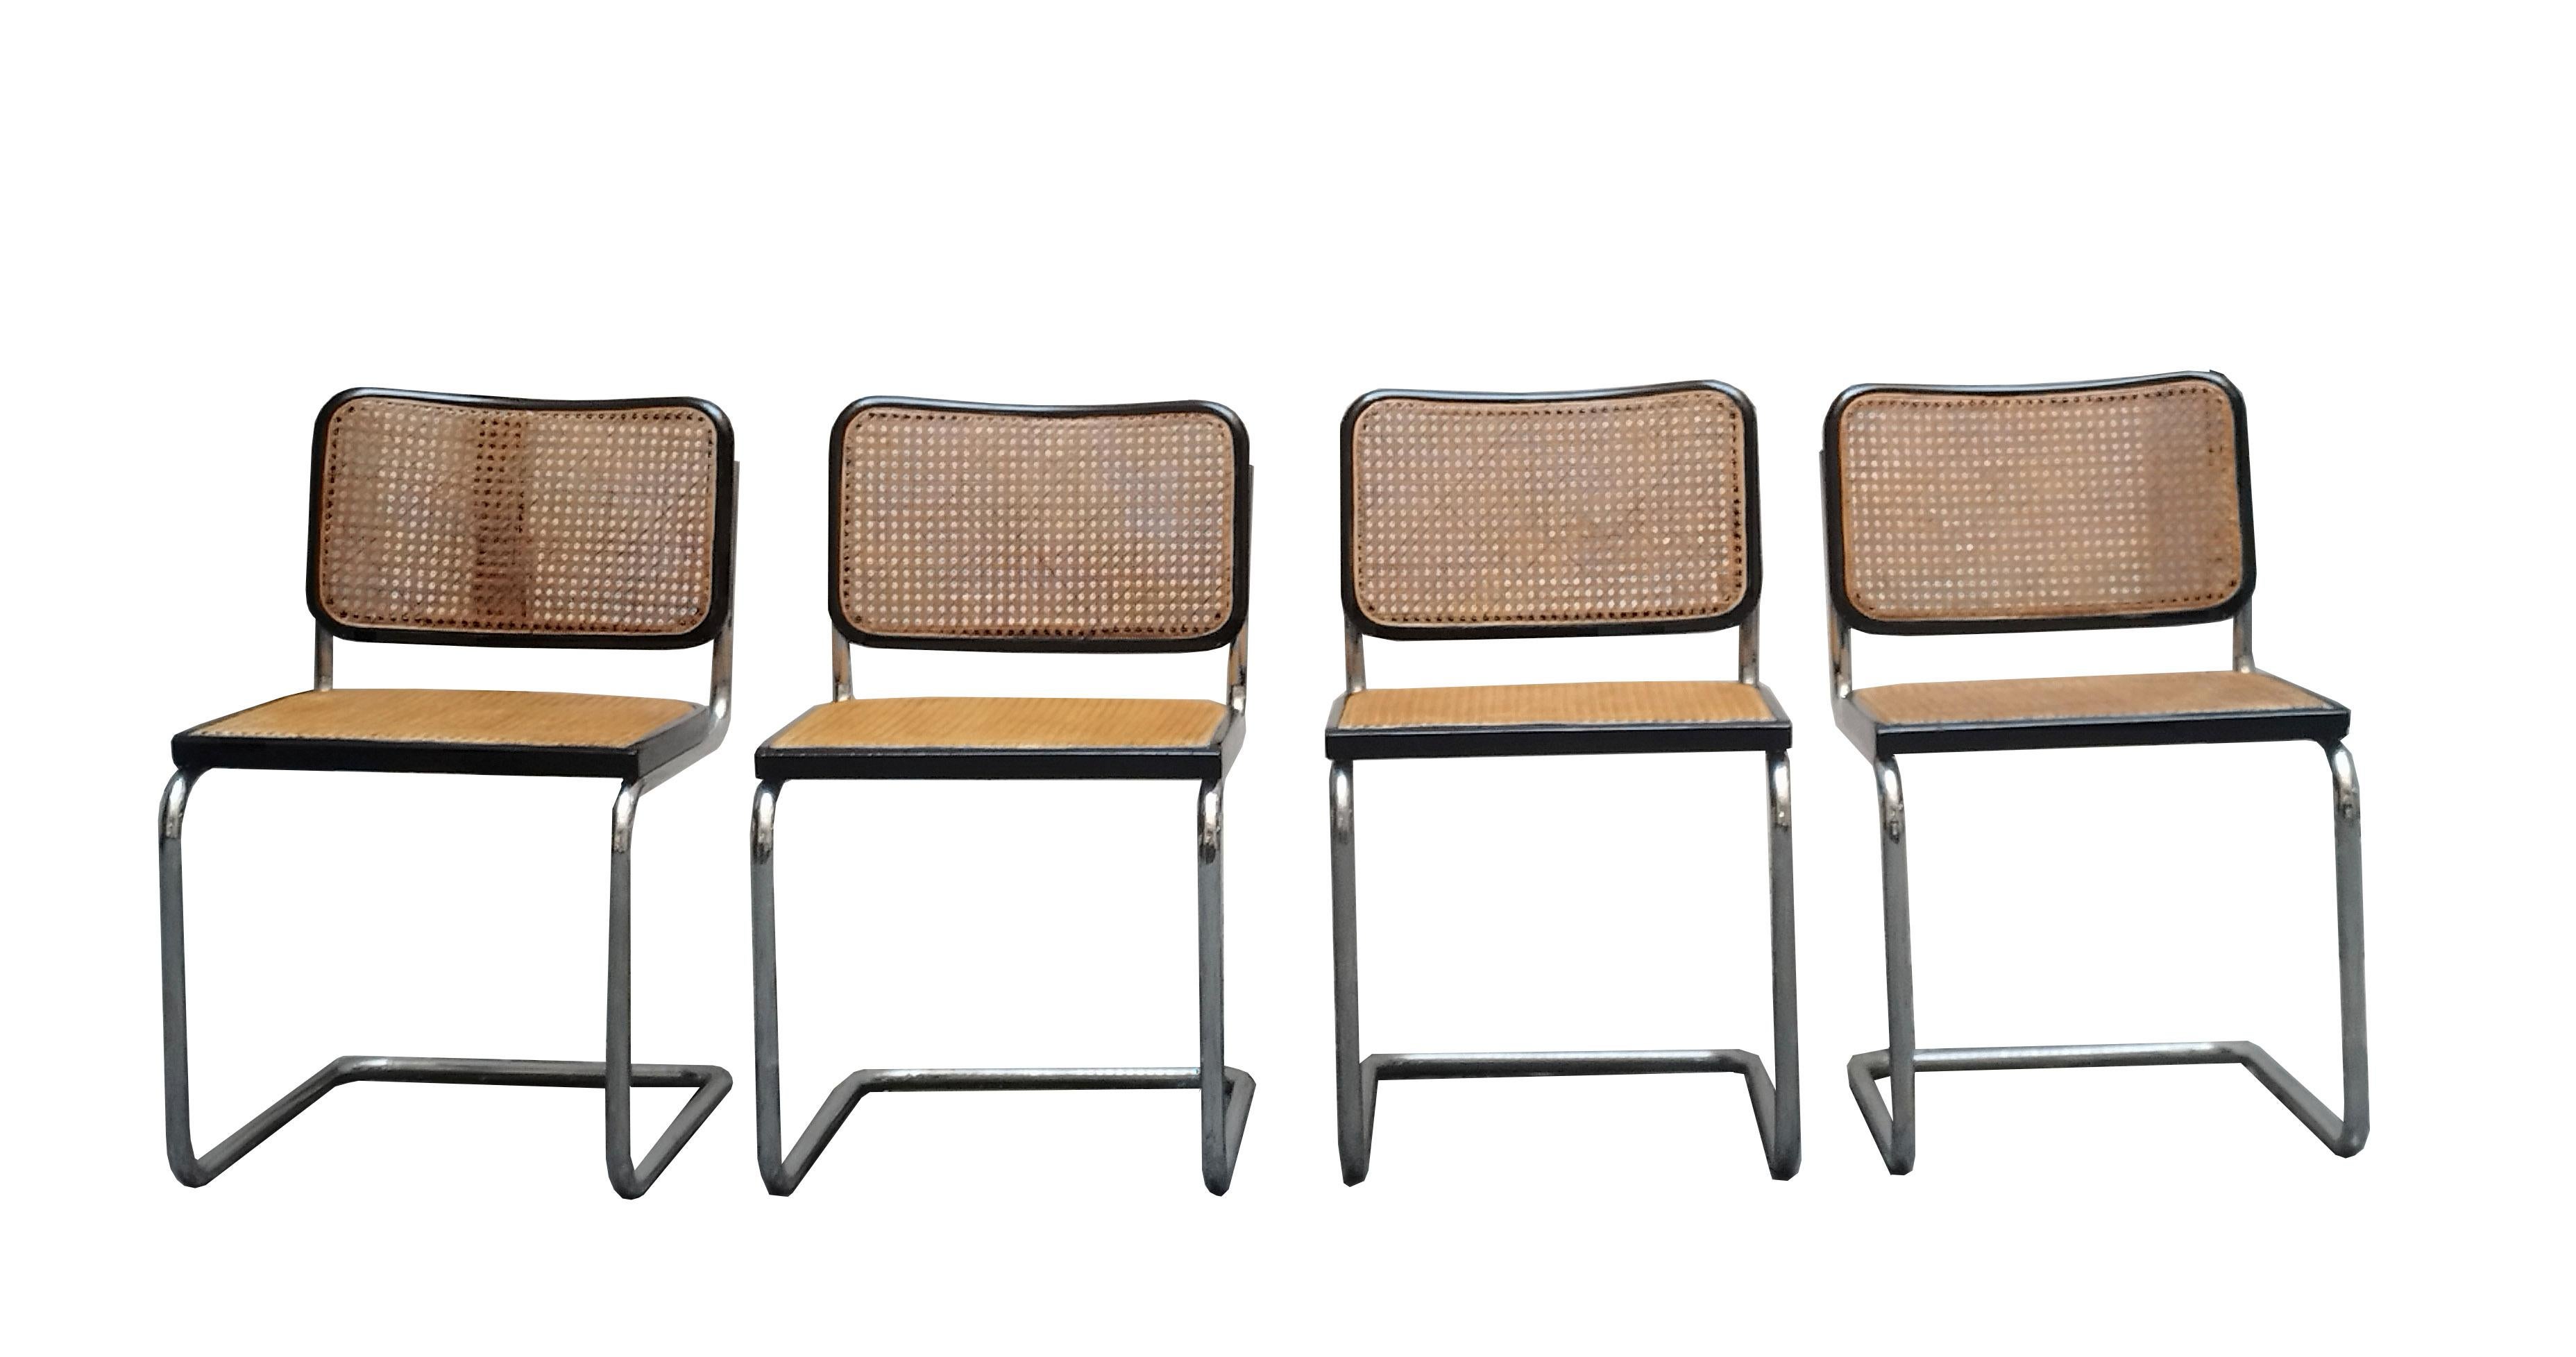 Groupe de quatre chaises Mod. Cesca par Marcel Lajos Breuer pour Gavina - Italie - avec étiquette d'origine.
Dossier en noyer, structure tubulaire en acier chromé et paille de Vienne. La chaise Cesca de Breuer a traversé toute l'histoire du design